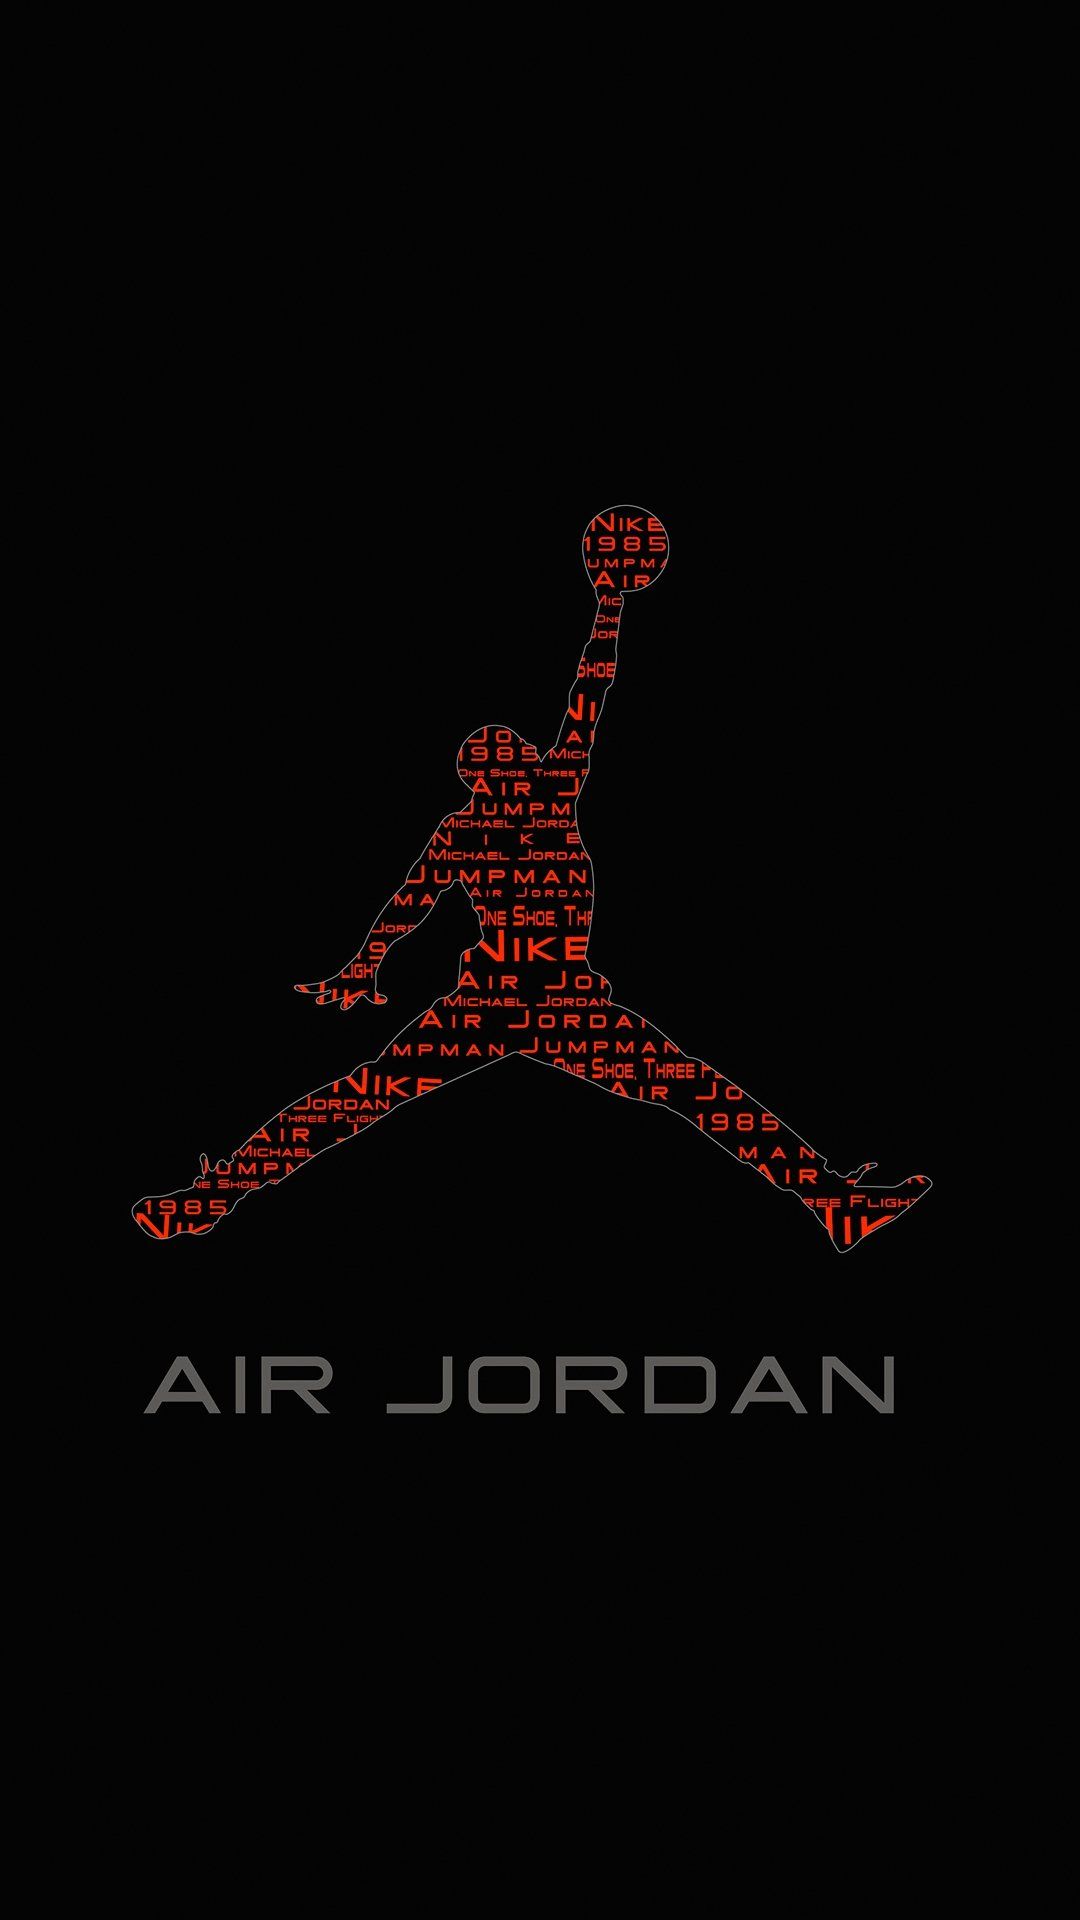 Air Jordan Wallpaper Amazing Air Jordan Background Download